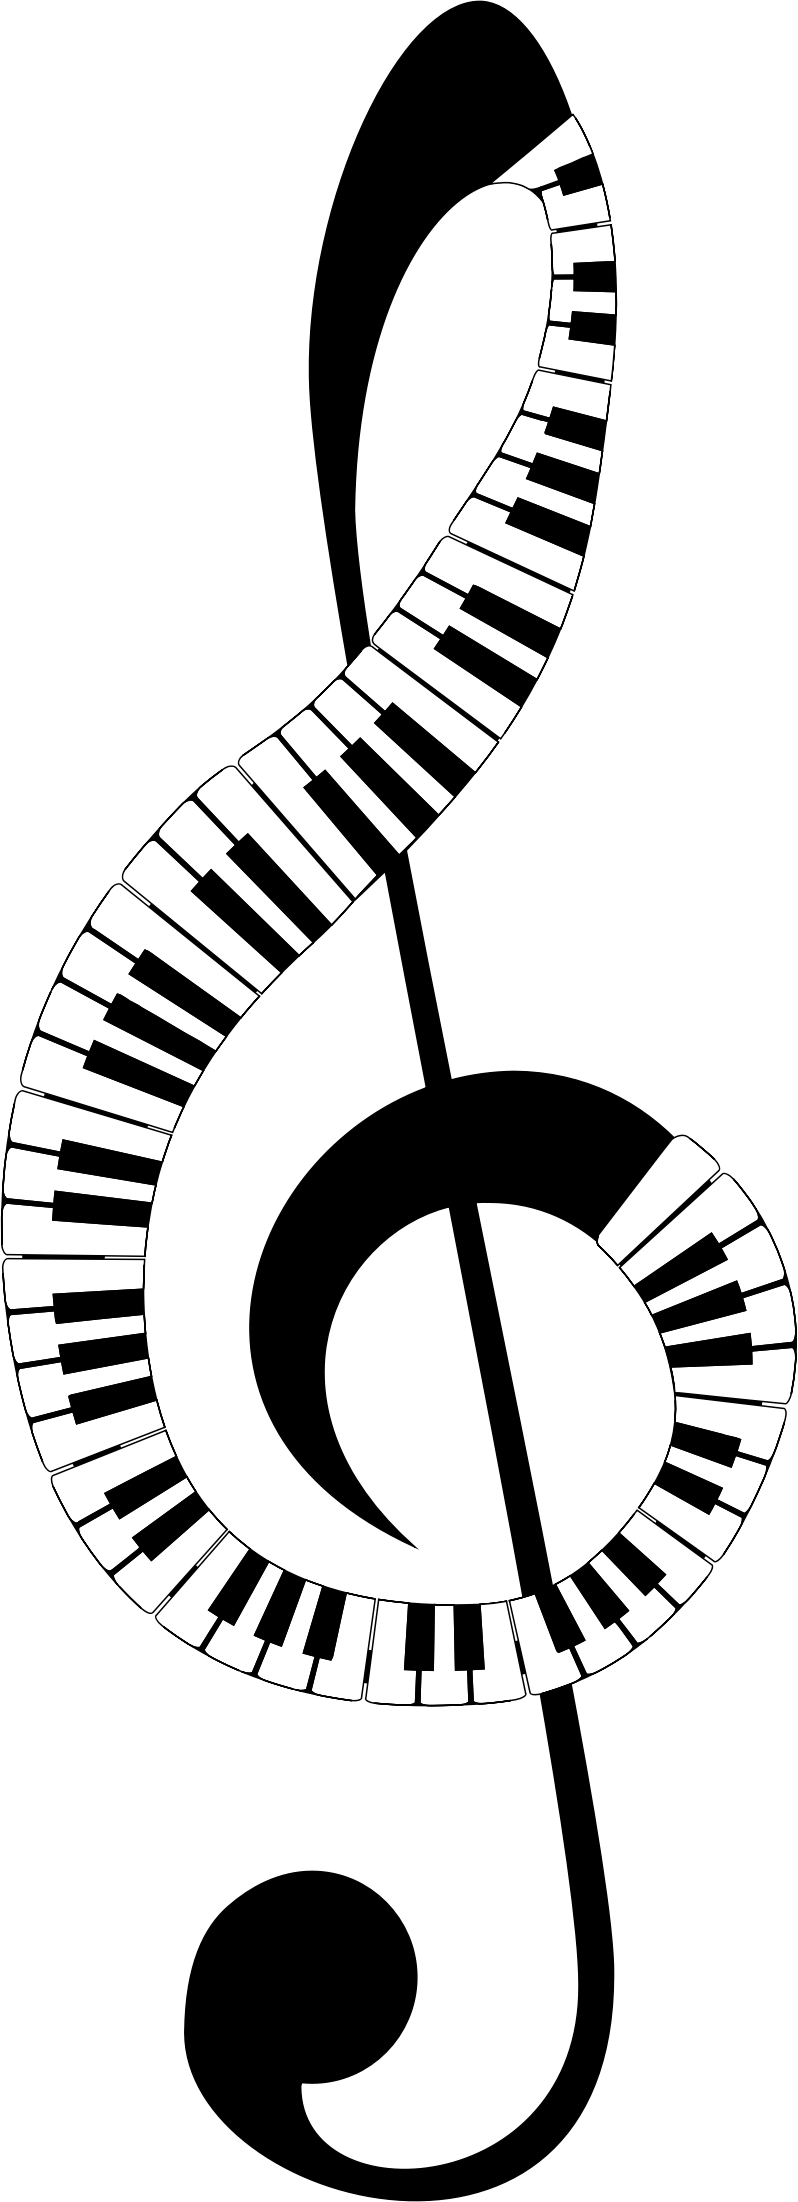 Piano abstract